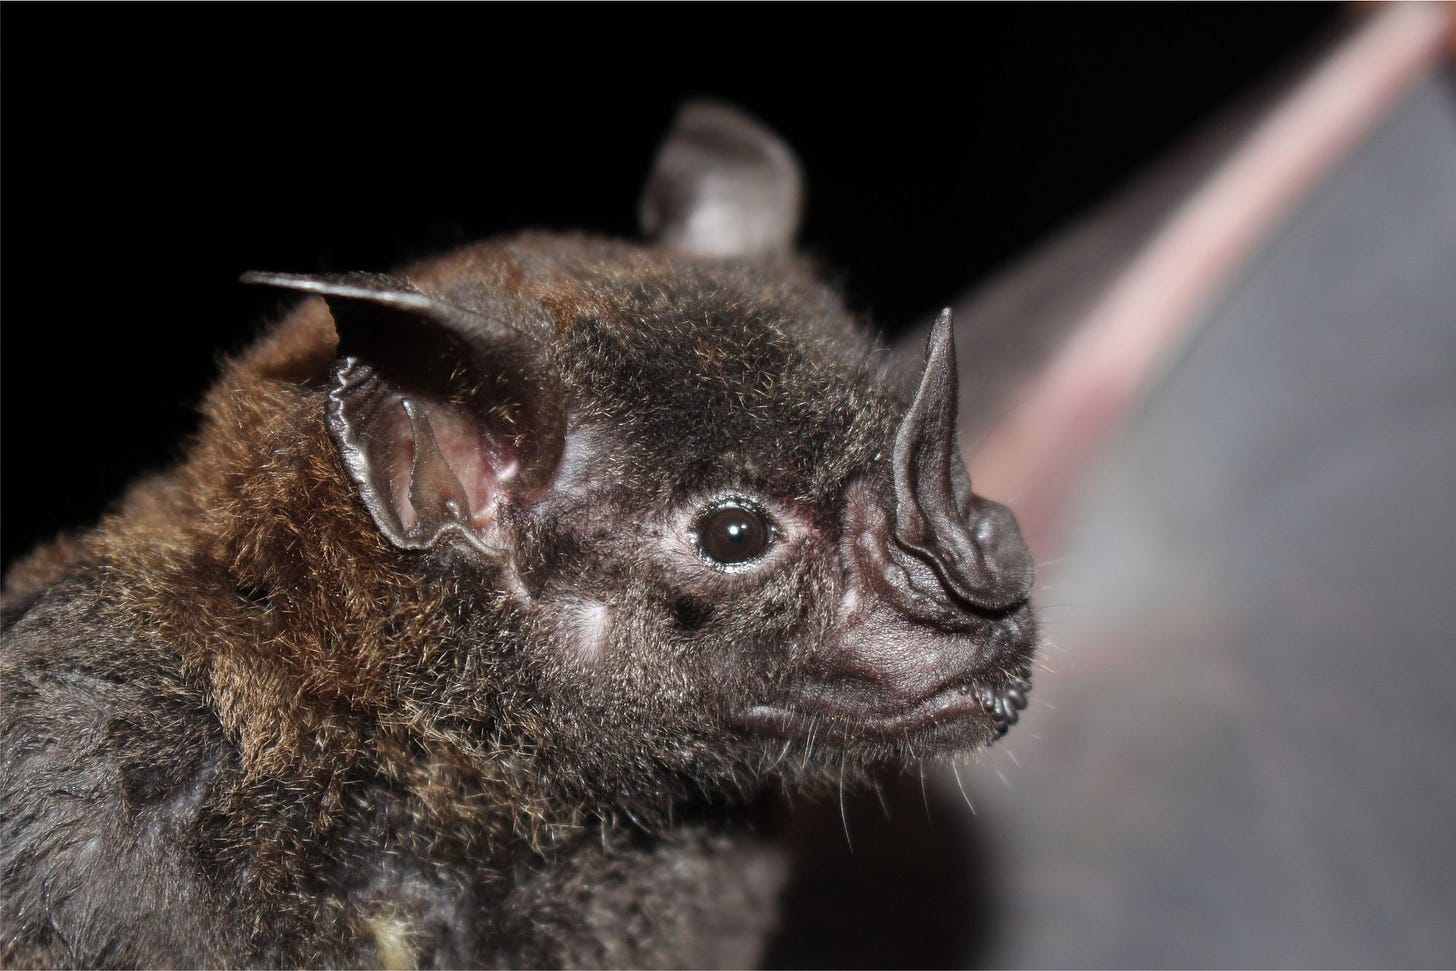 close-up of a bat's face 